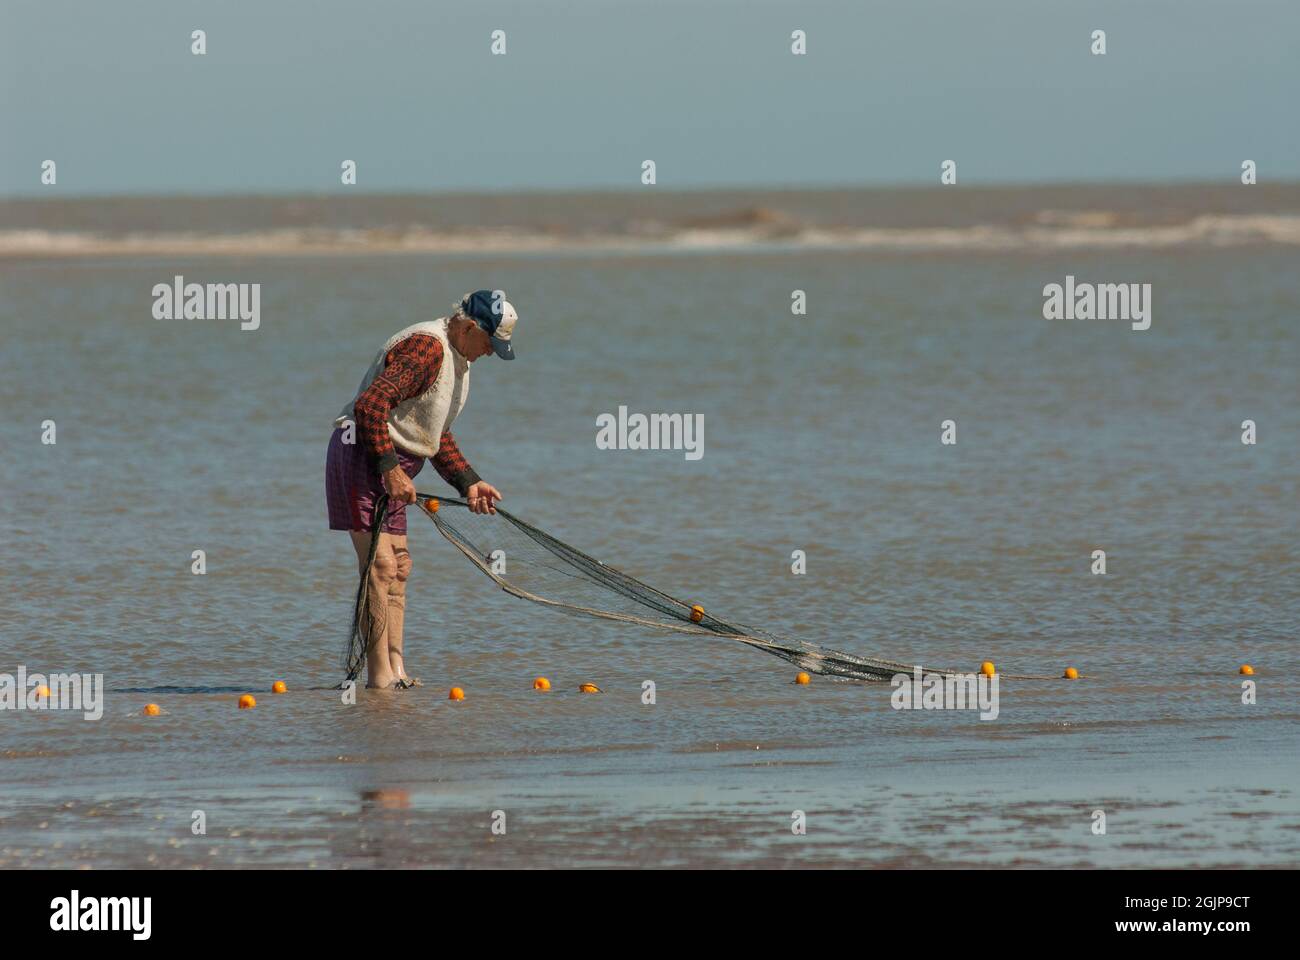 BUENOS AIRES, ARGENTINE - 10 novembre 2008: Une vue des pêcheurs dans la mer vérifiant leurs filets à Punta Rasa, Buenos Aires, Argentine Banque D'Images